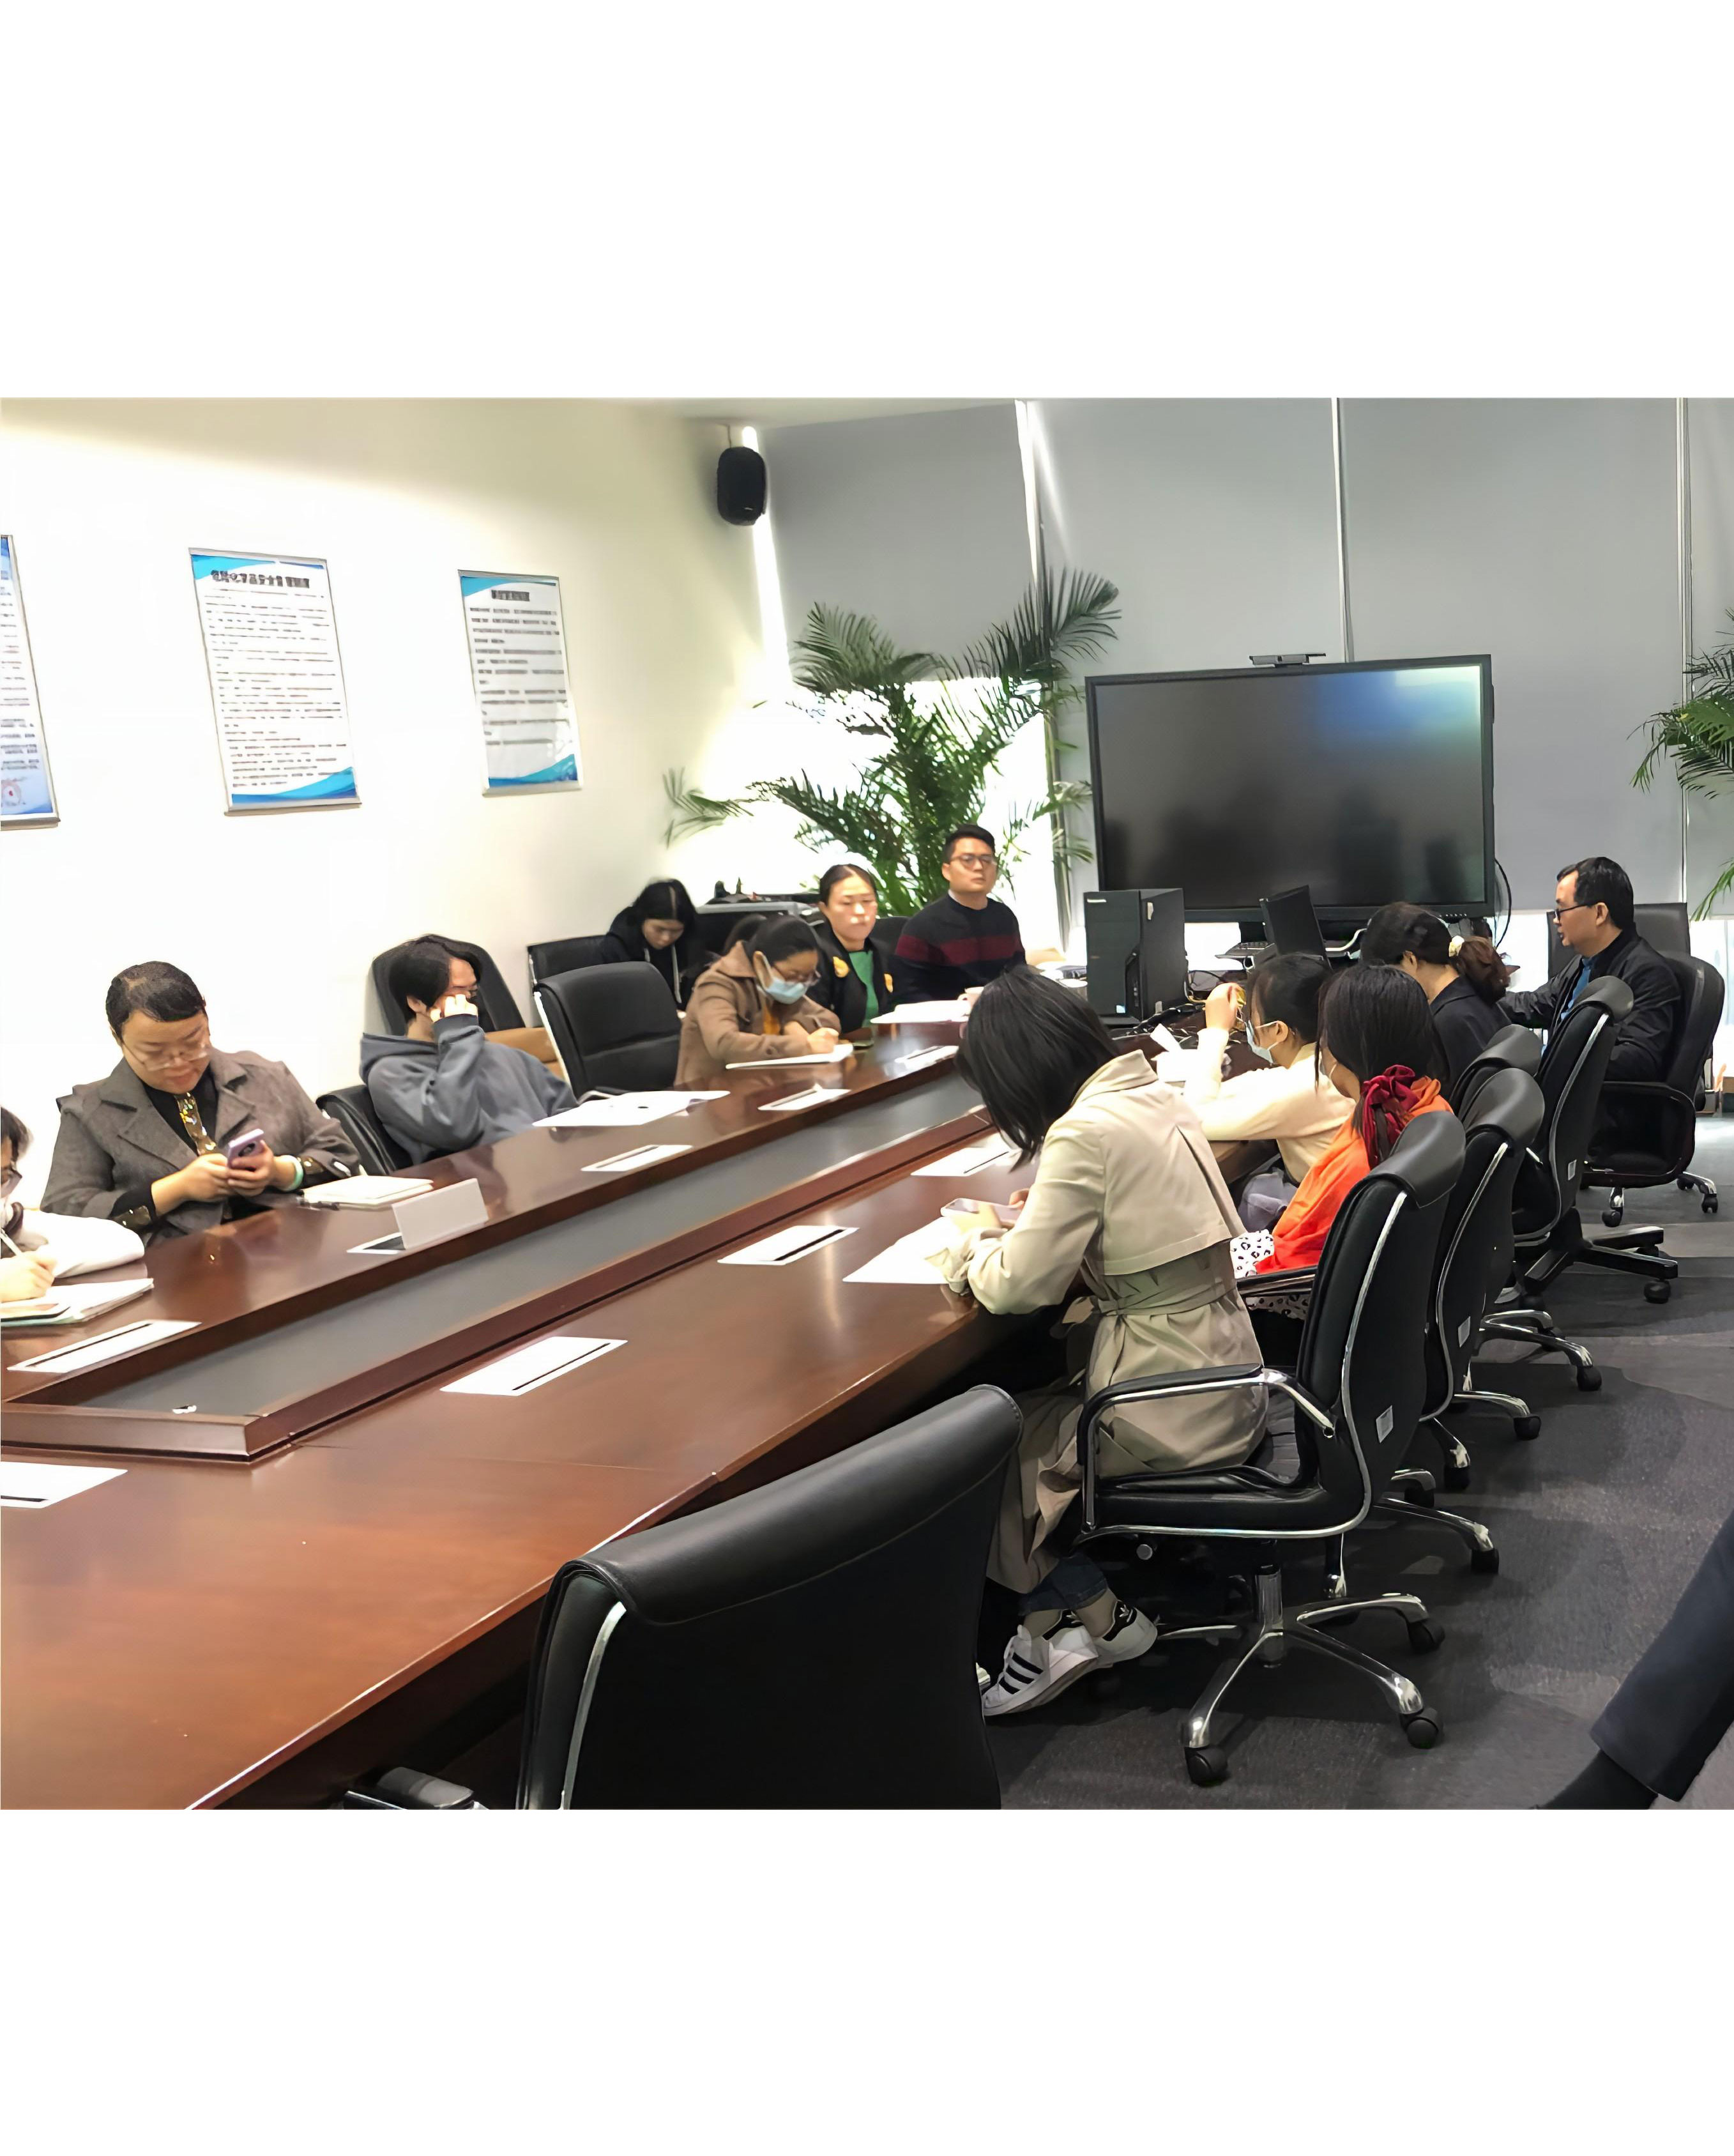 Pour la formation et la base solide, Shenzhen Sunrise New Energy Co., Ltd a organisé la session de formation sur les produits et le support technique